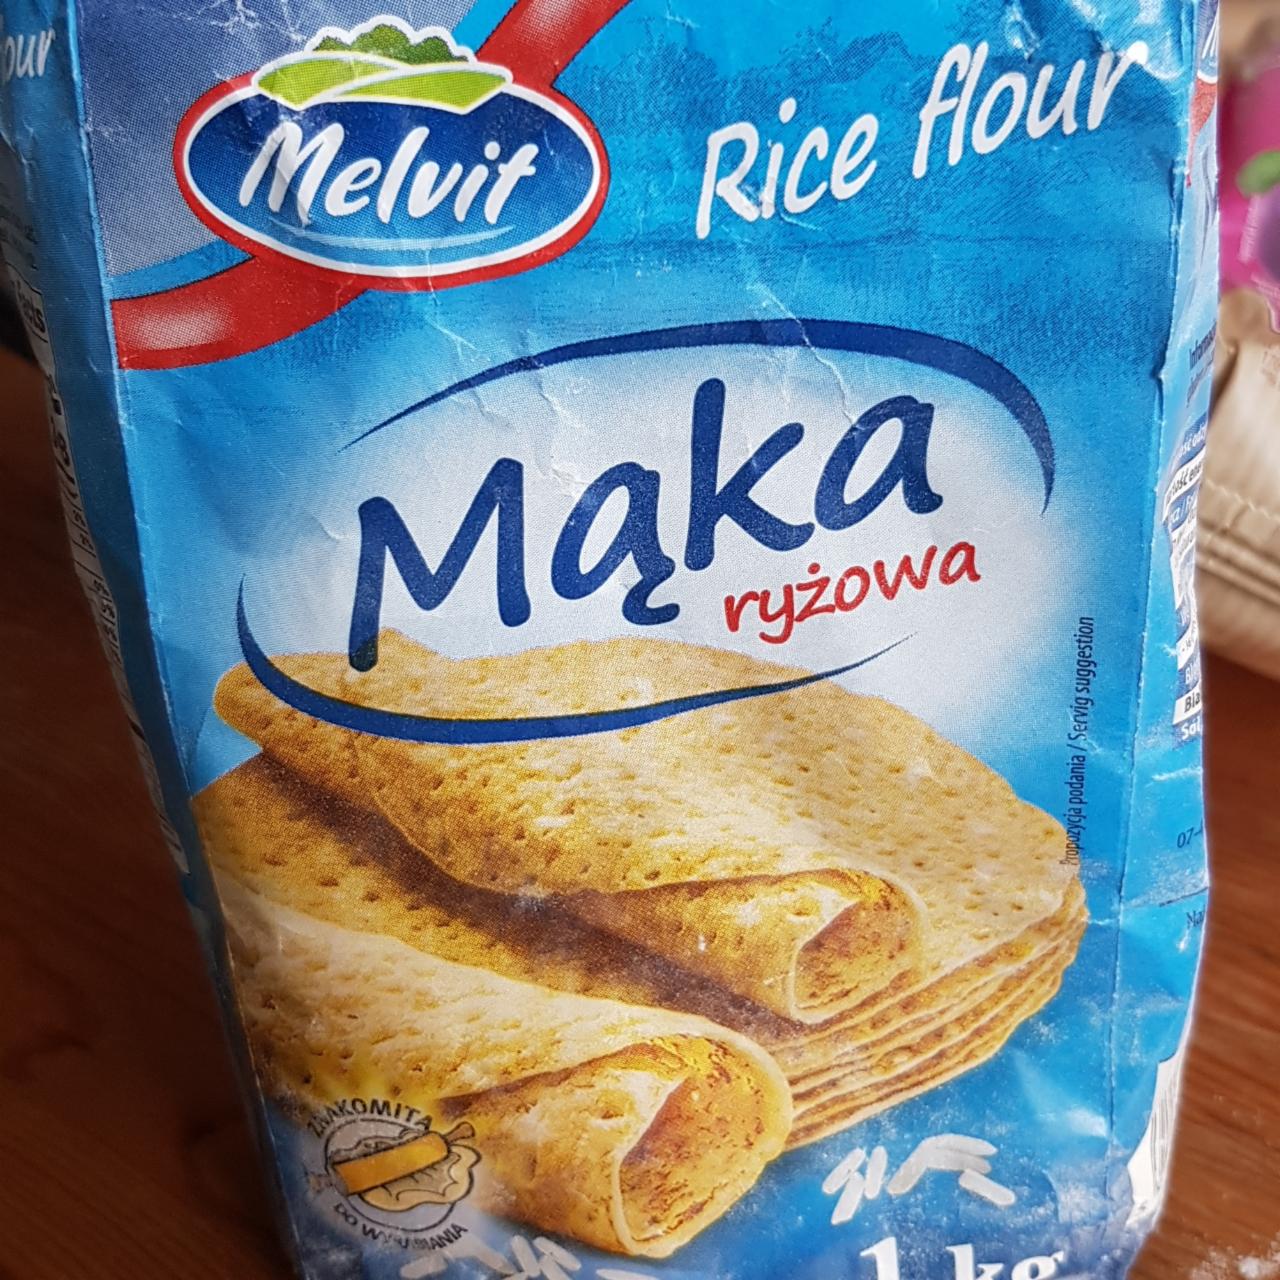 Zdjęcia - Mąka ryżowa Melvit